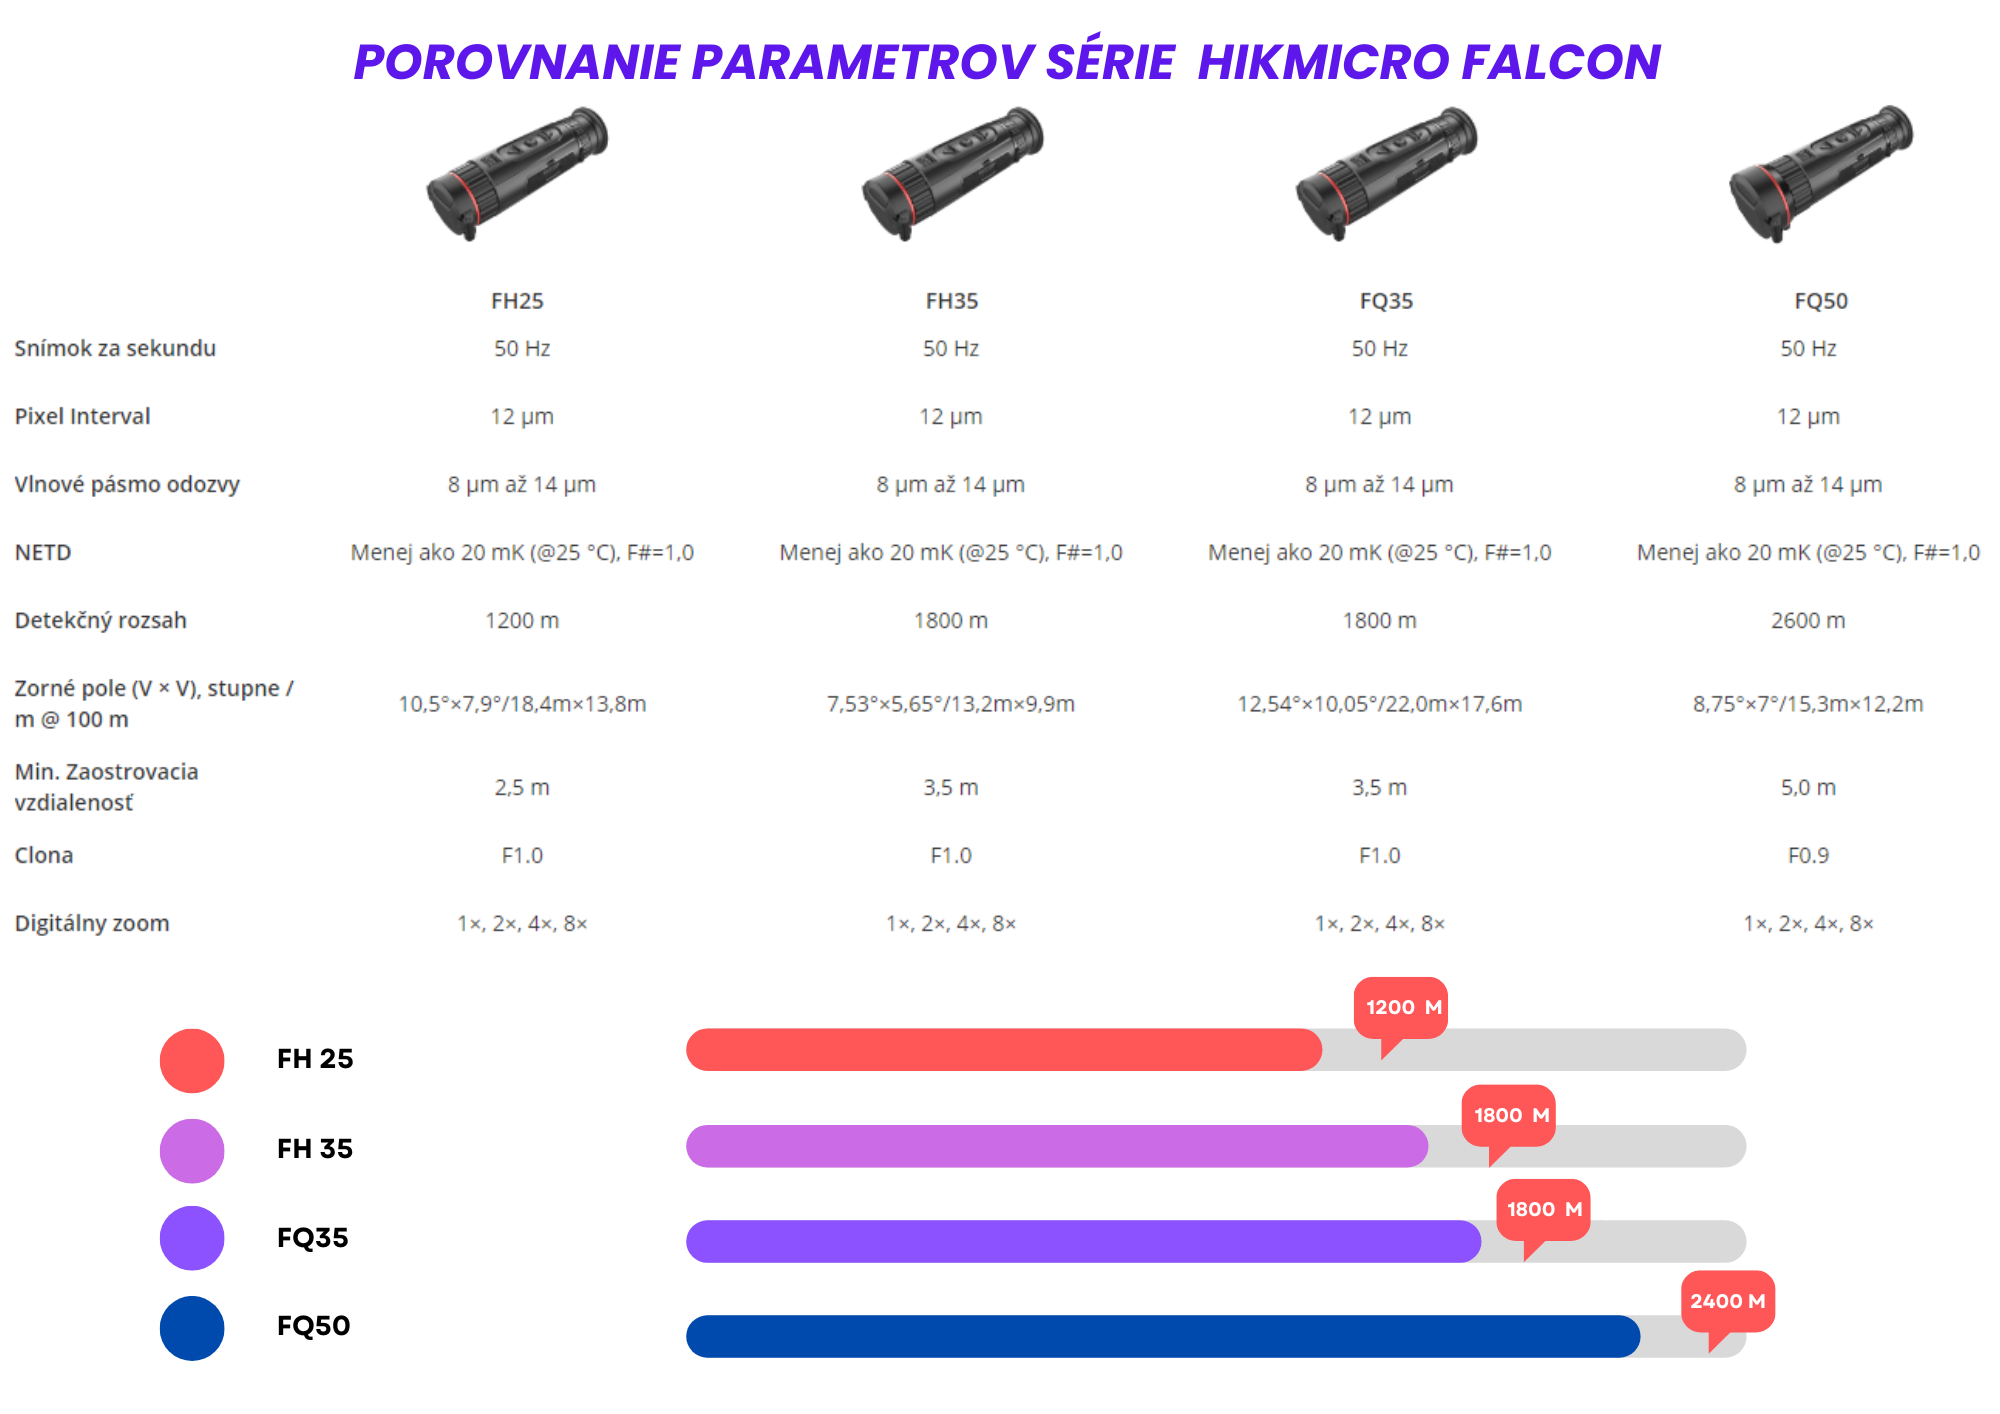 Porovnanie parametrov HIKMICRO FALCON